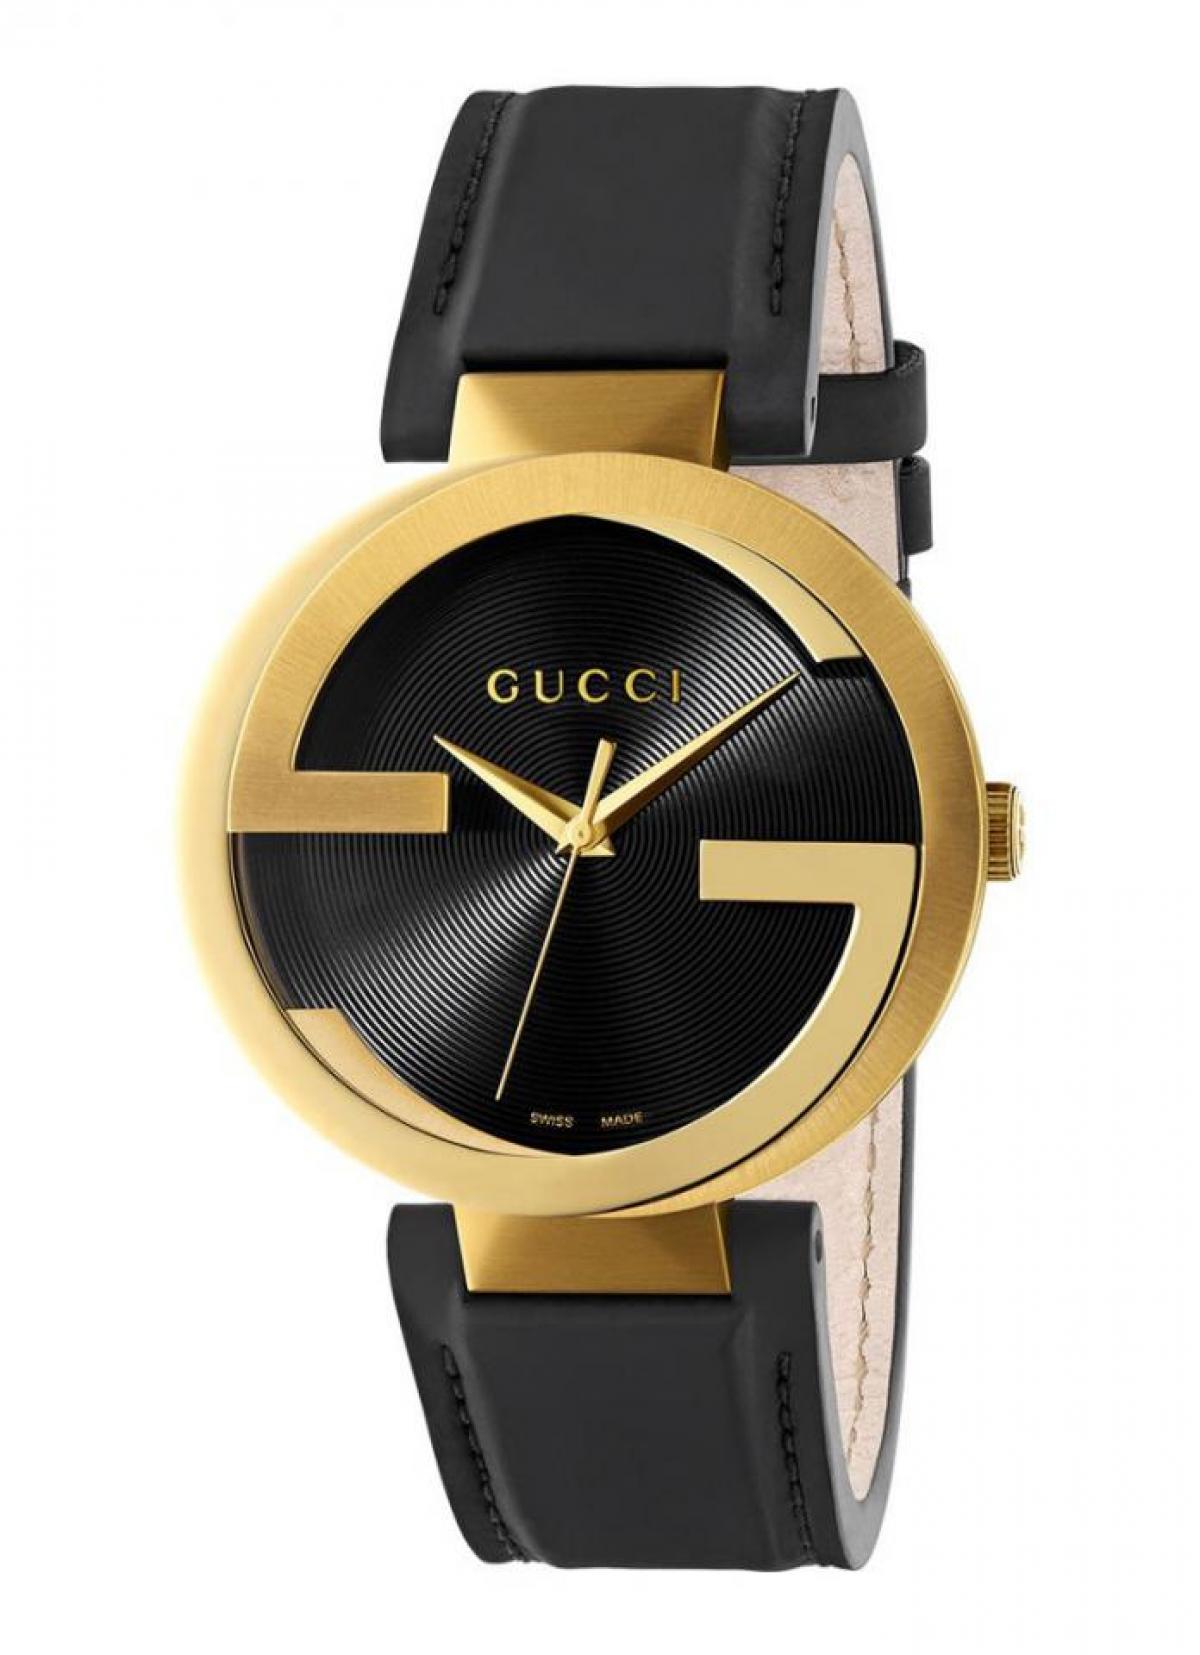 La montre Gucci